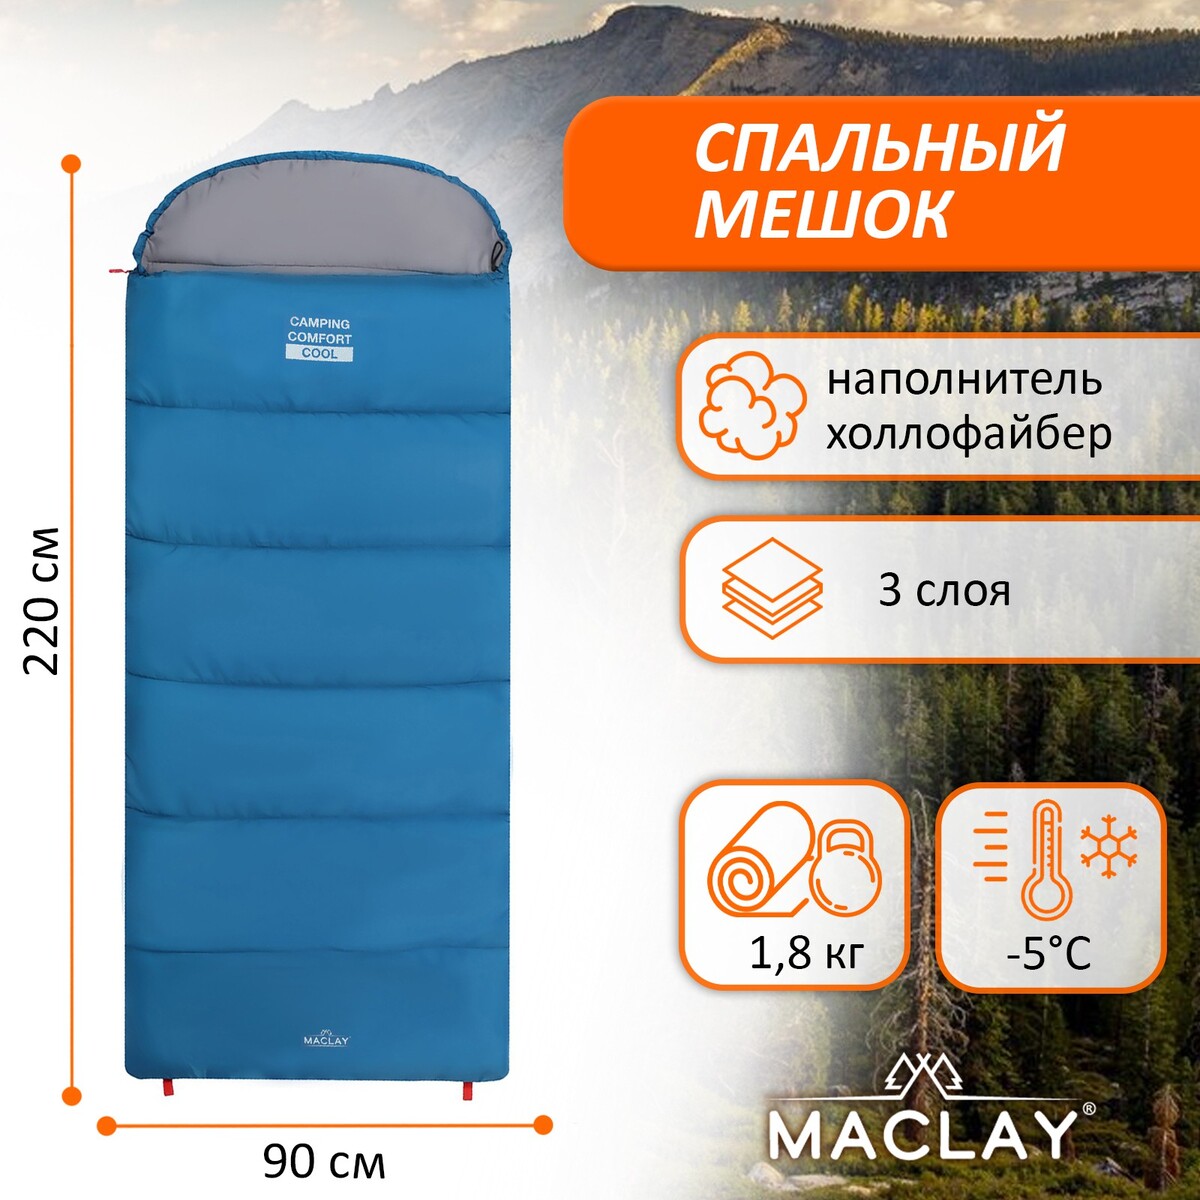 Спальный мешок maclay camping comfort cool, 3-слойный, правый, 220х90 см, -5/+10°с спальный мешок maclay camping comfort cold 4 слойный левый 220х90 см 10 5°с